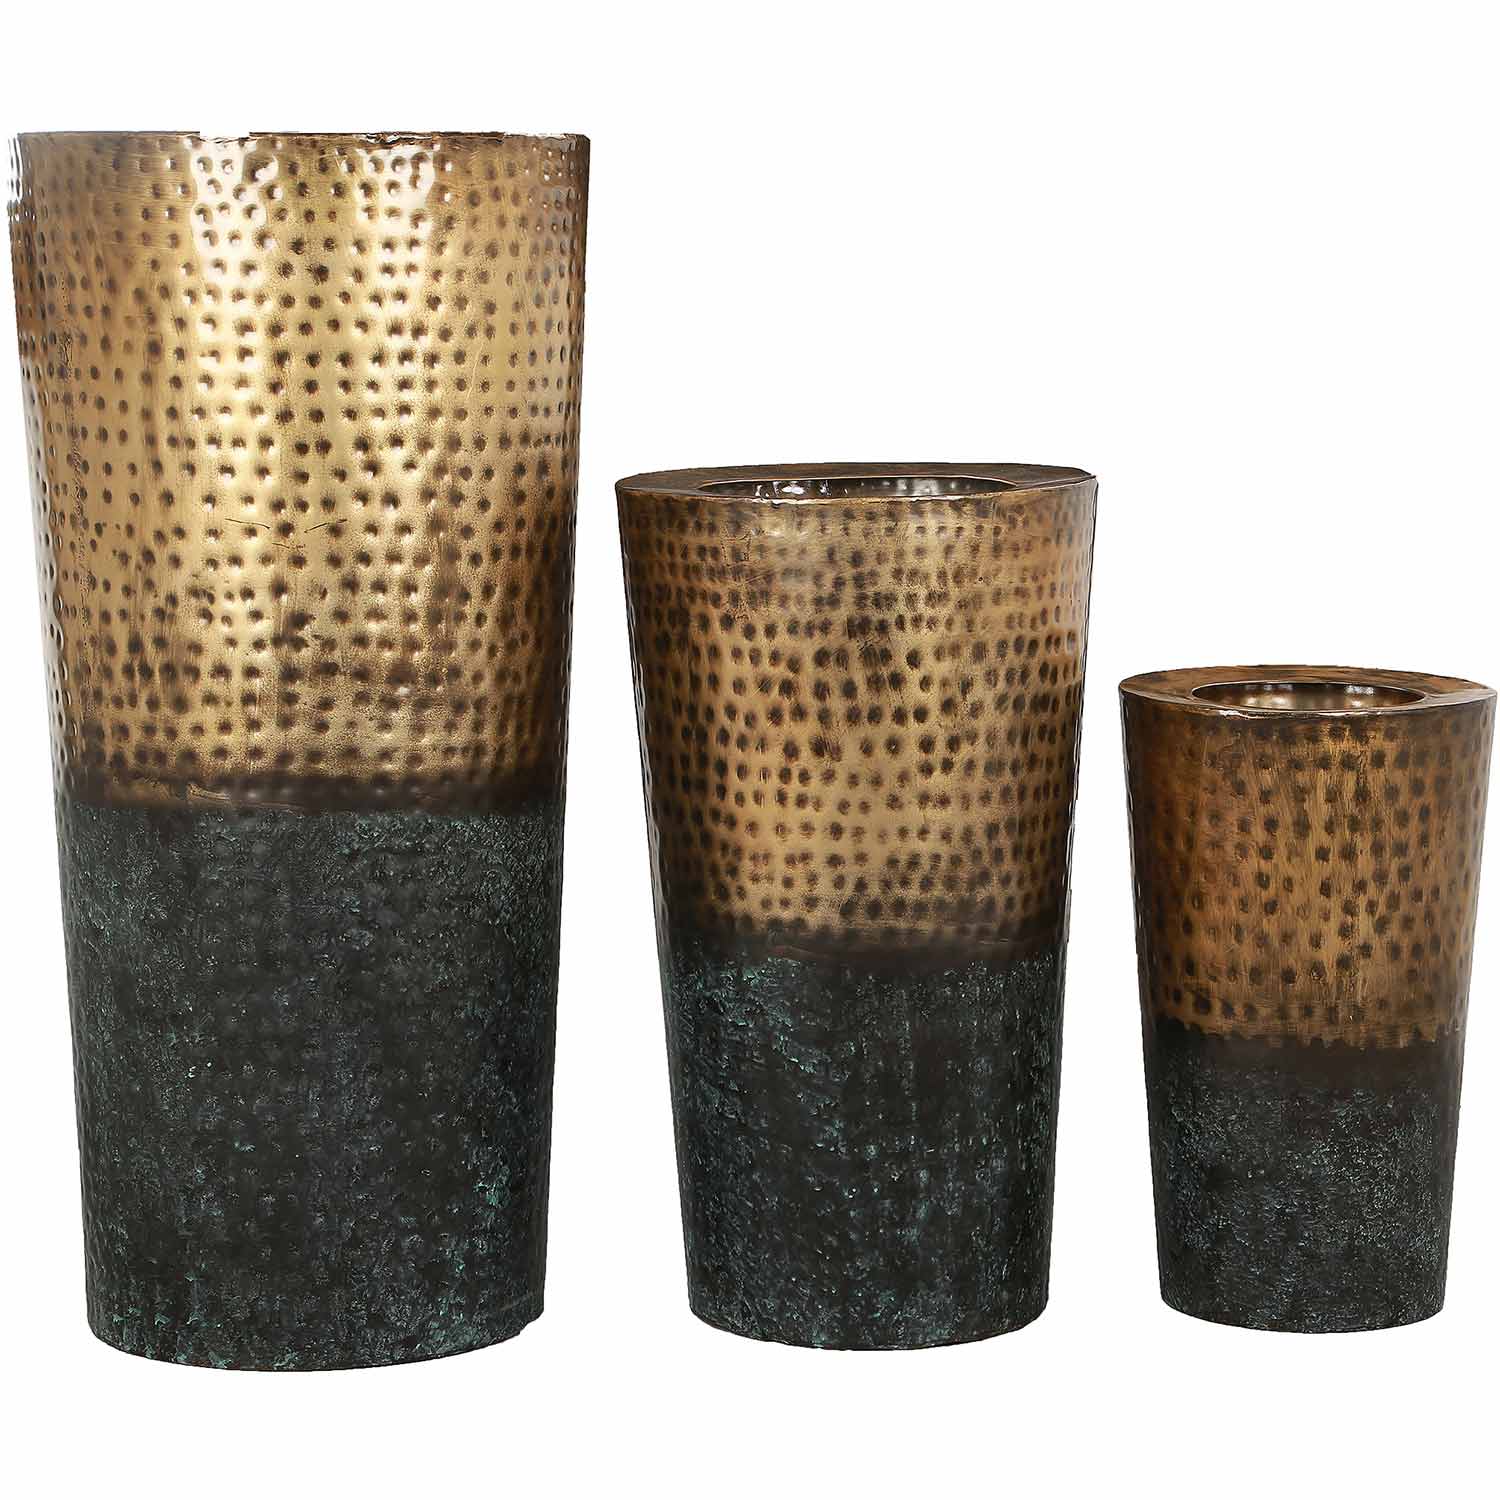 Ren-Wil Freya Outdoor Vase - Rustic Gold/Patina